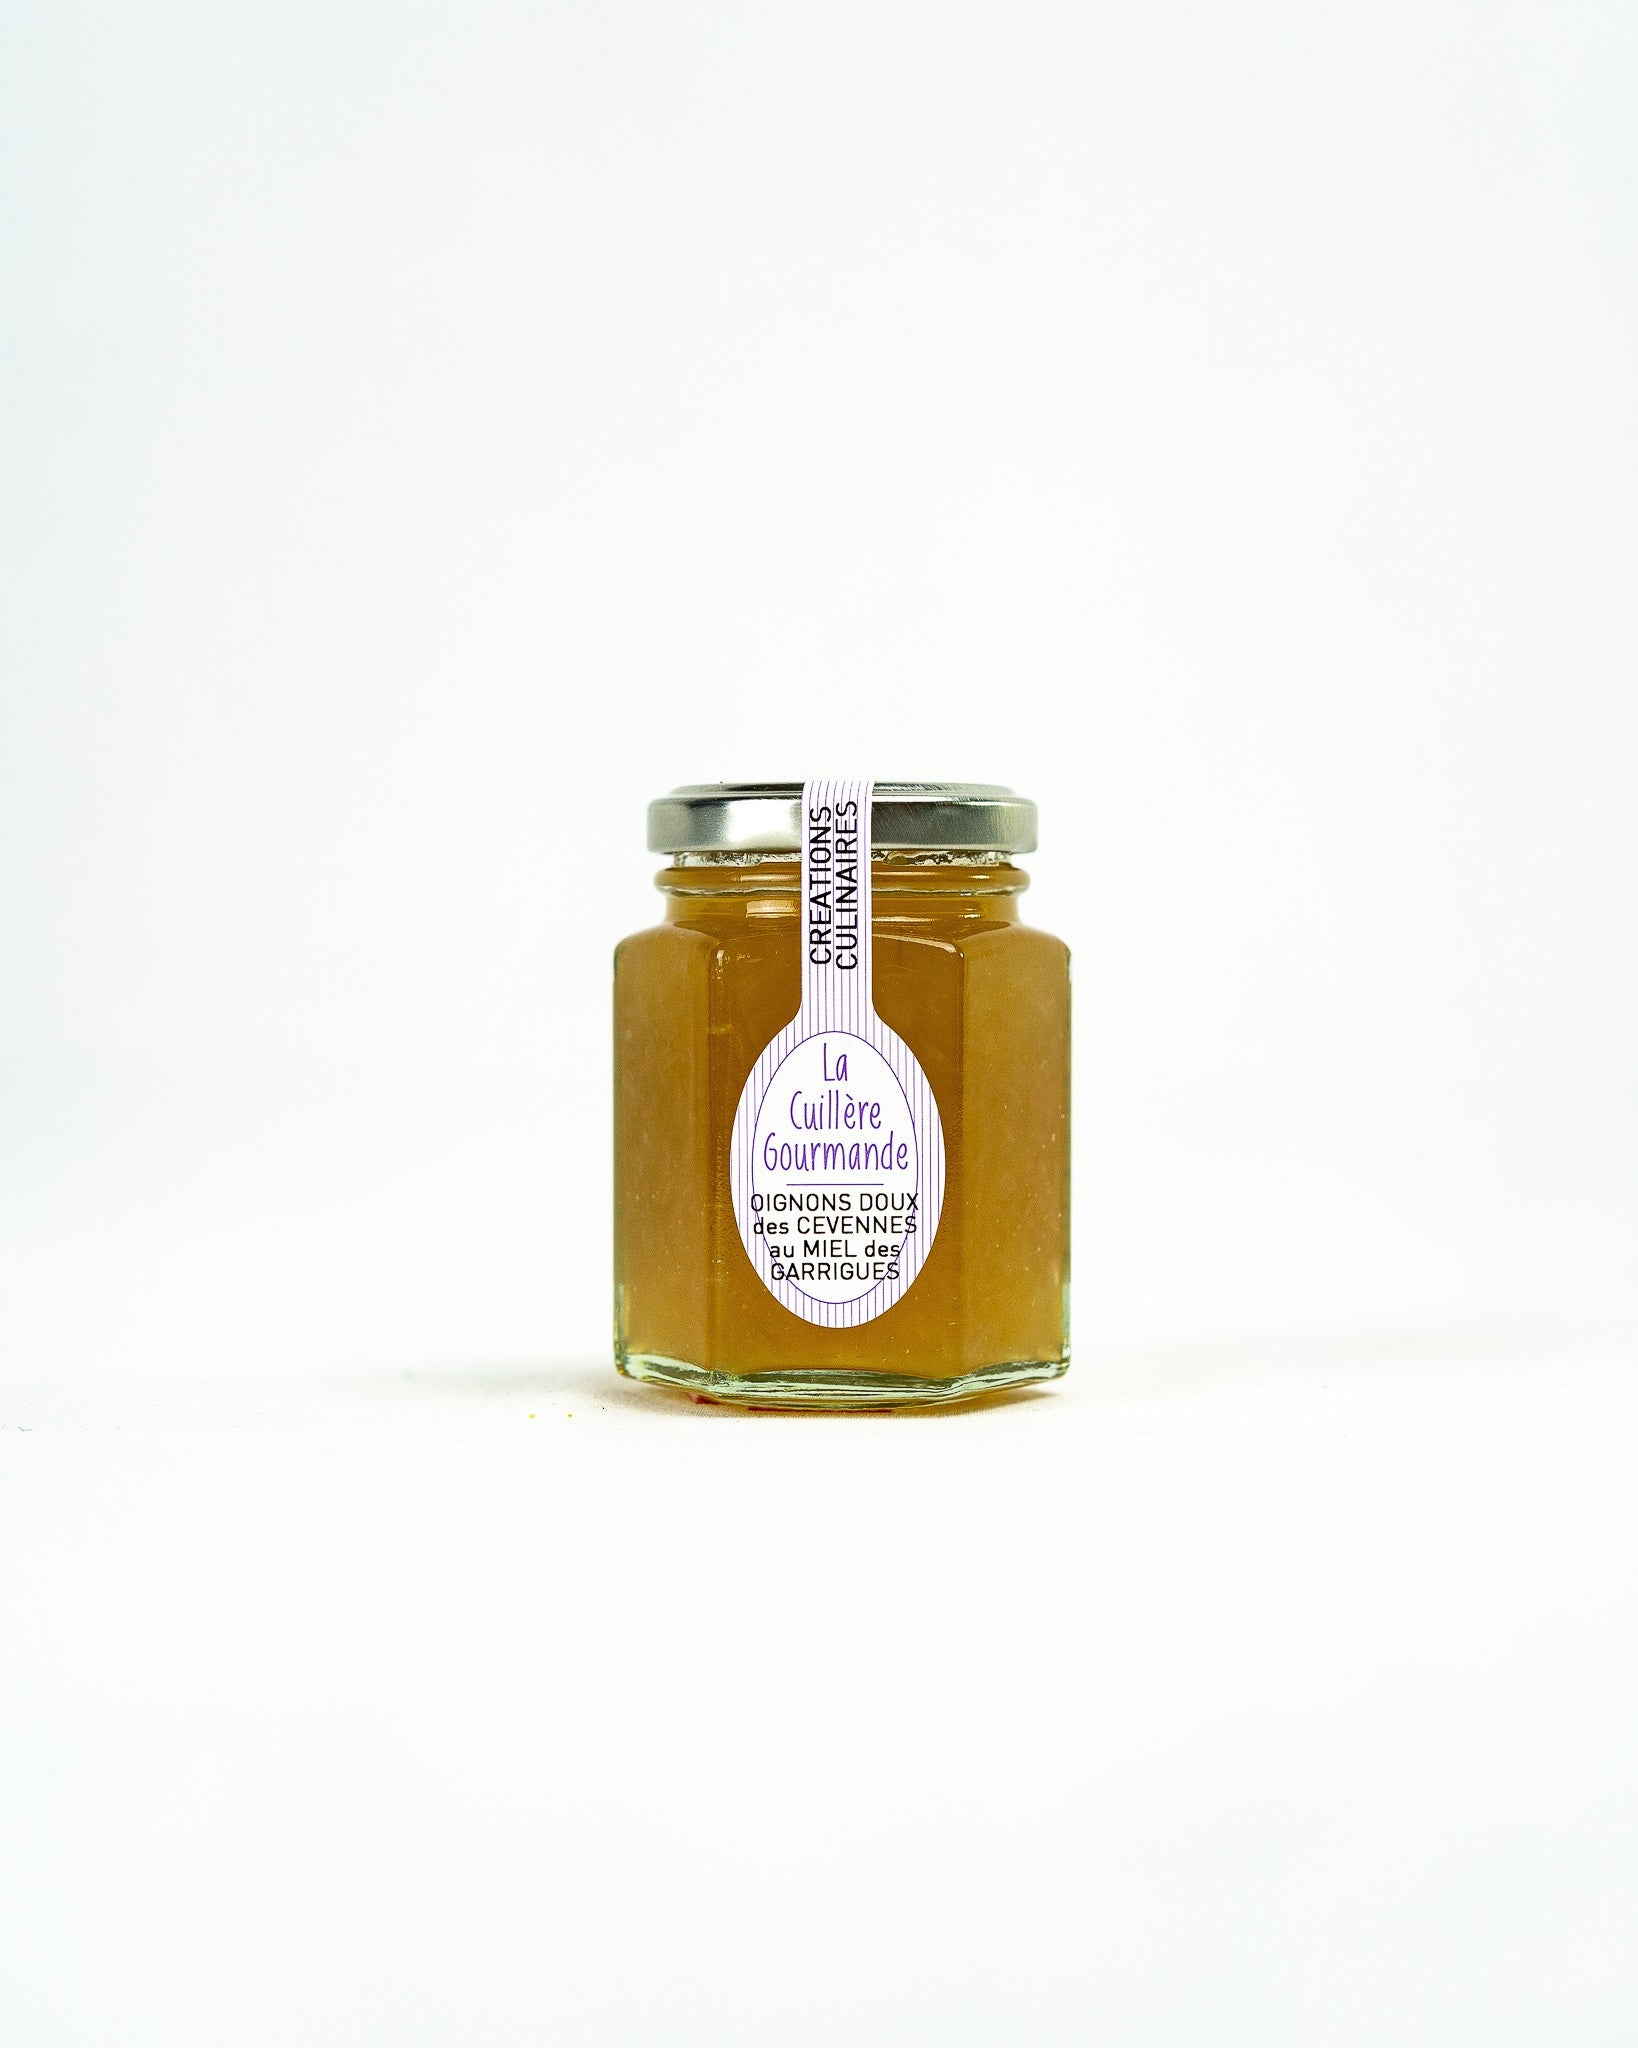 Confit d'oignon doux des cévennes au miel des garrigues